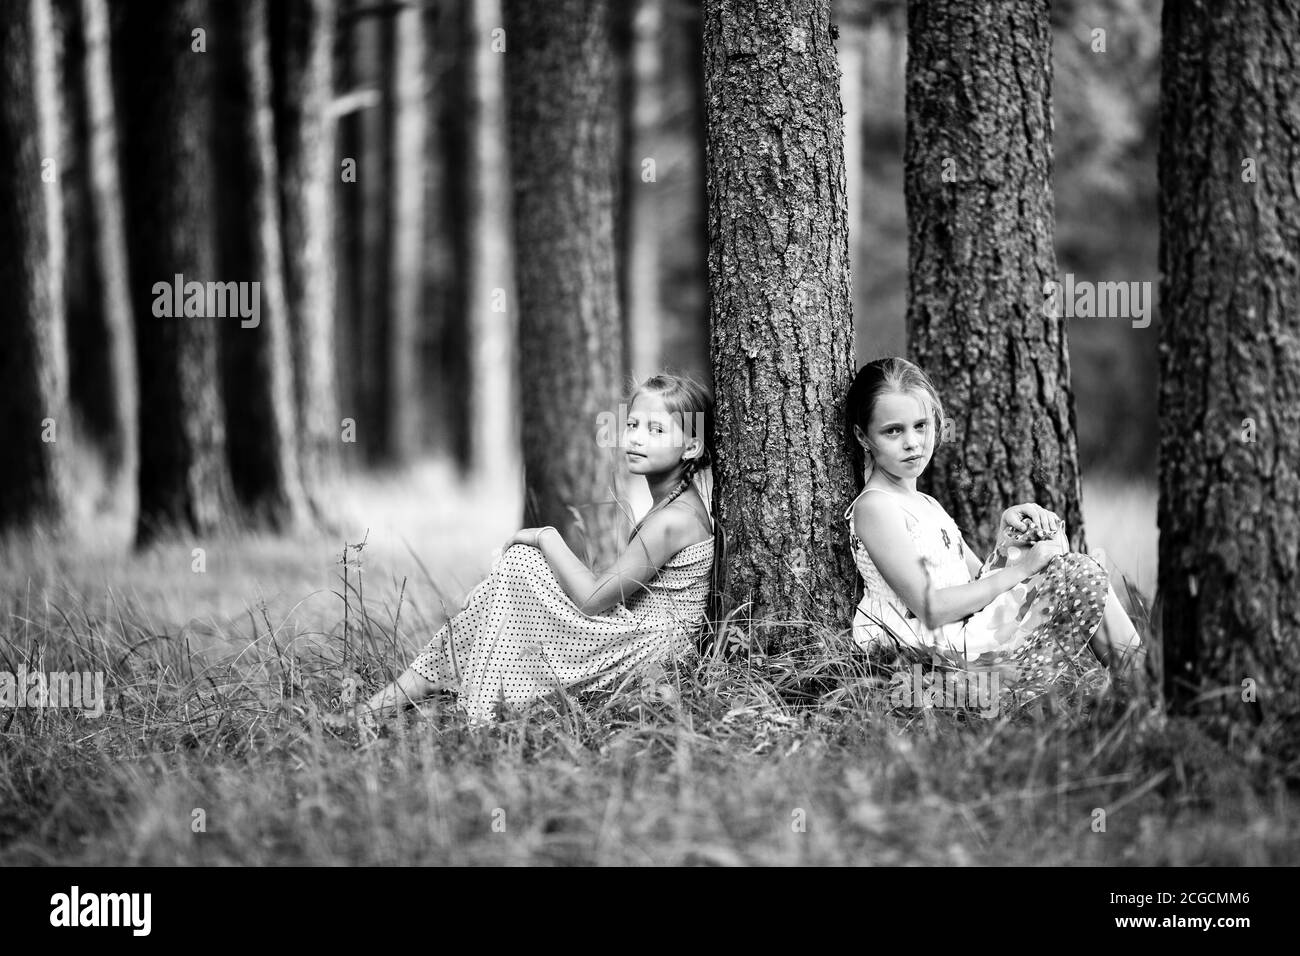 Deux jolies petites filles dans le parc. Photo en noir et blanc. Banque D'Images